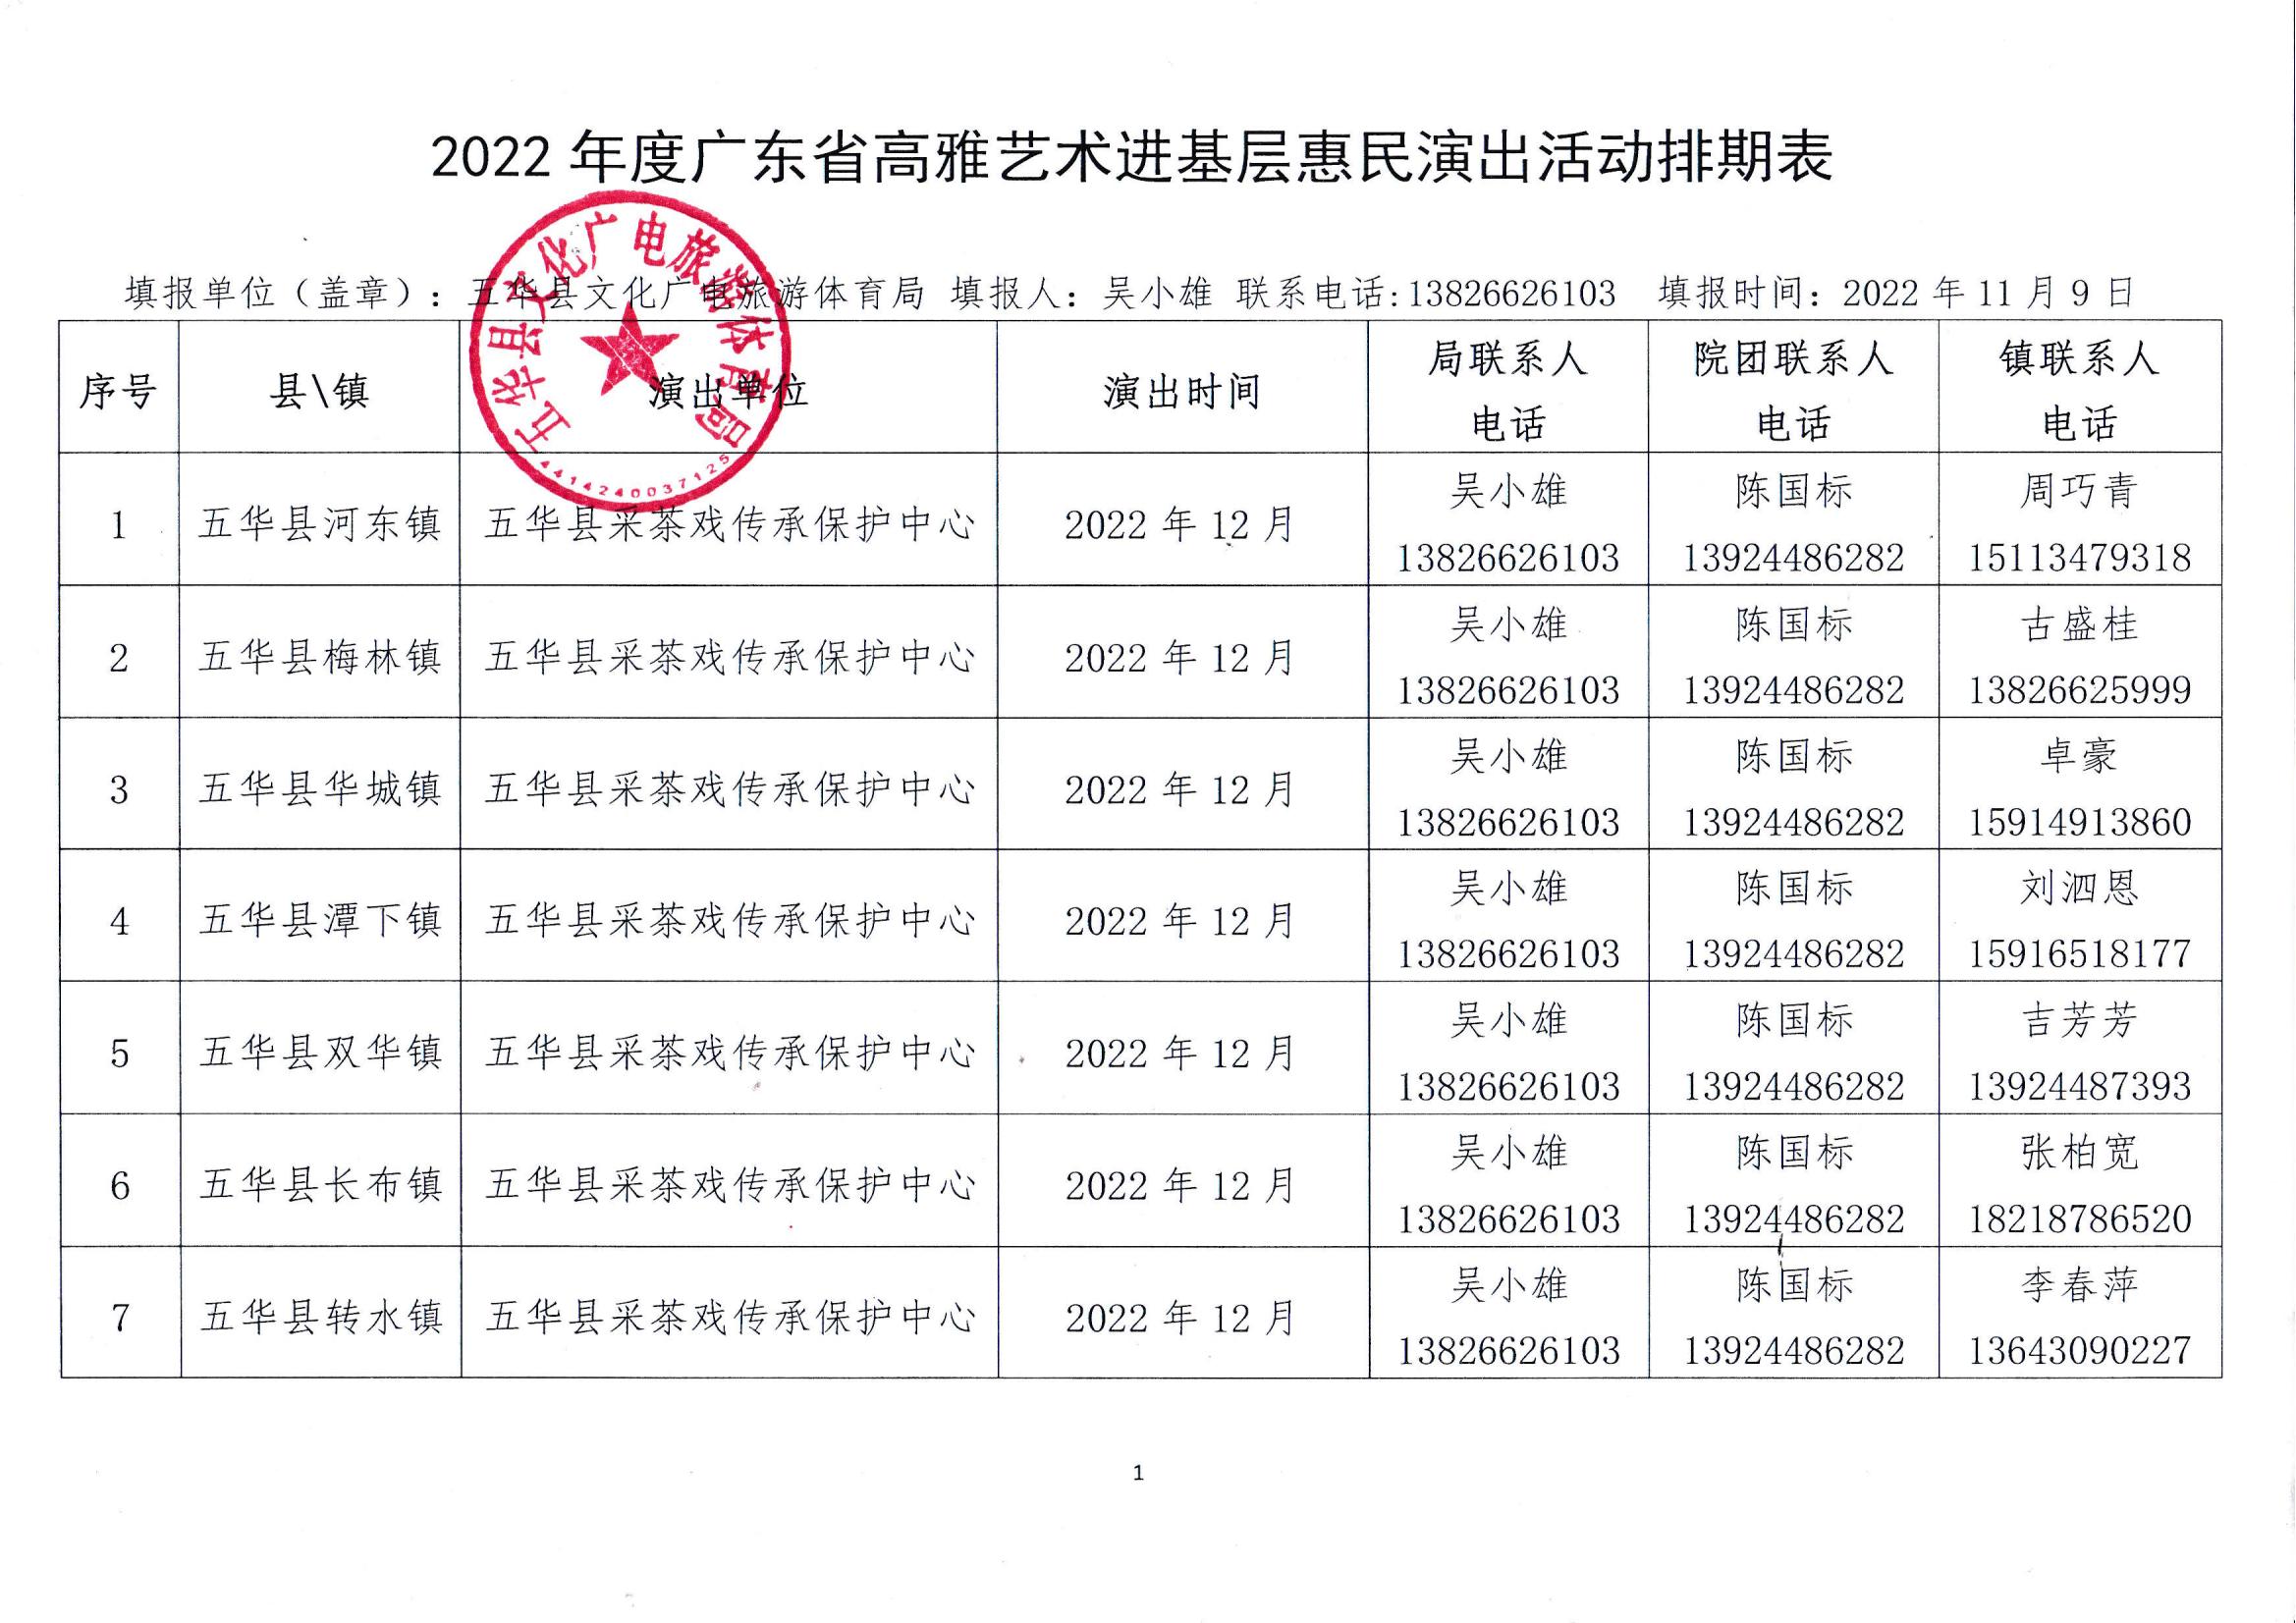 2022年度广东省高雅艺术进基层惠民演出活动排期表_00.jpg